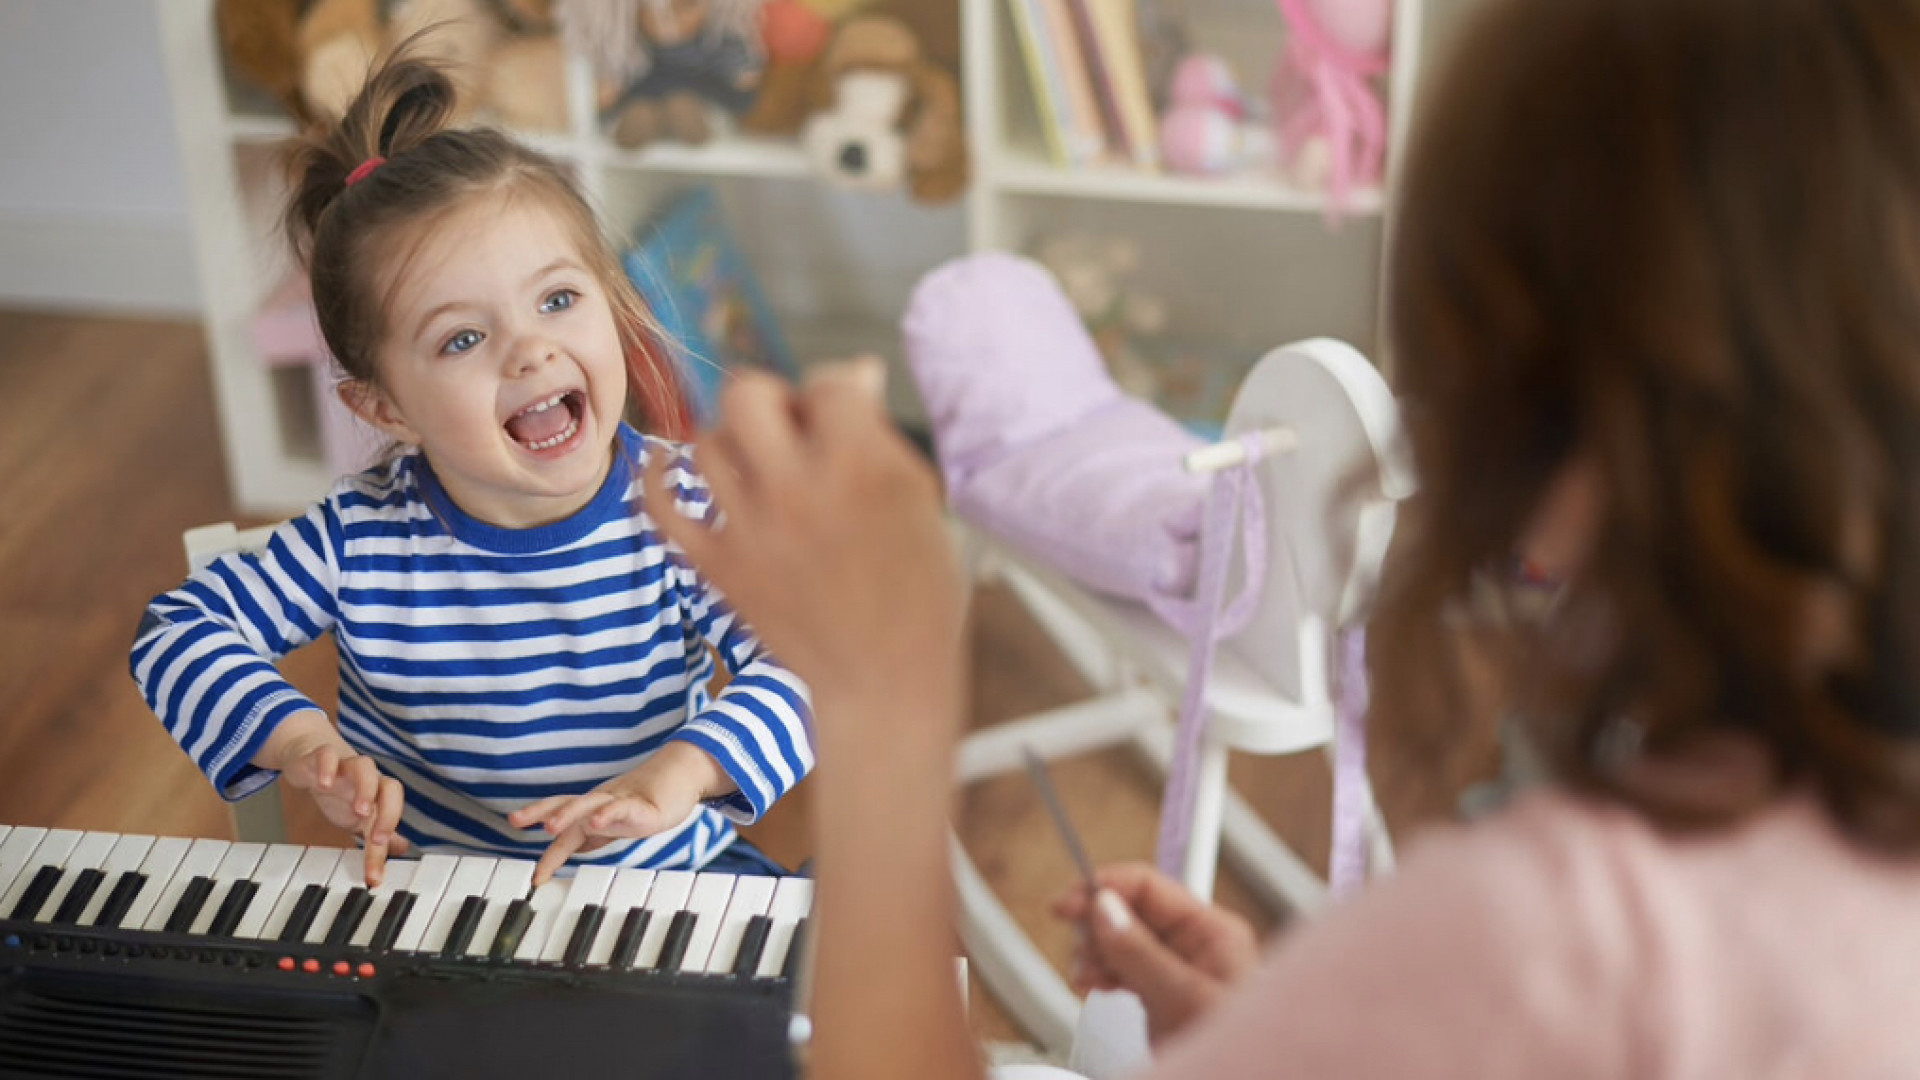 Занятие пением детей. Занятия вокалом с малышами. Студия вокала для детей. Уроки вокала. Урок вокала дети инвалиды.